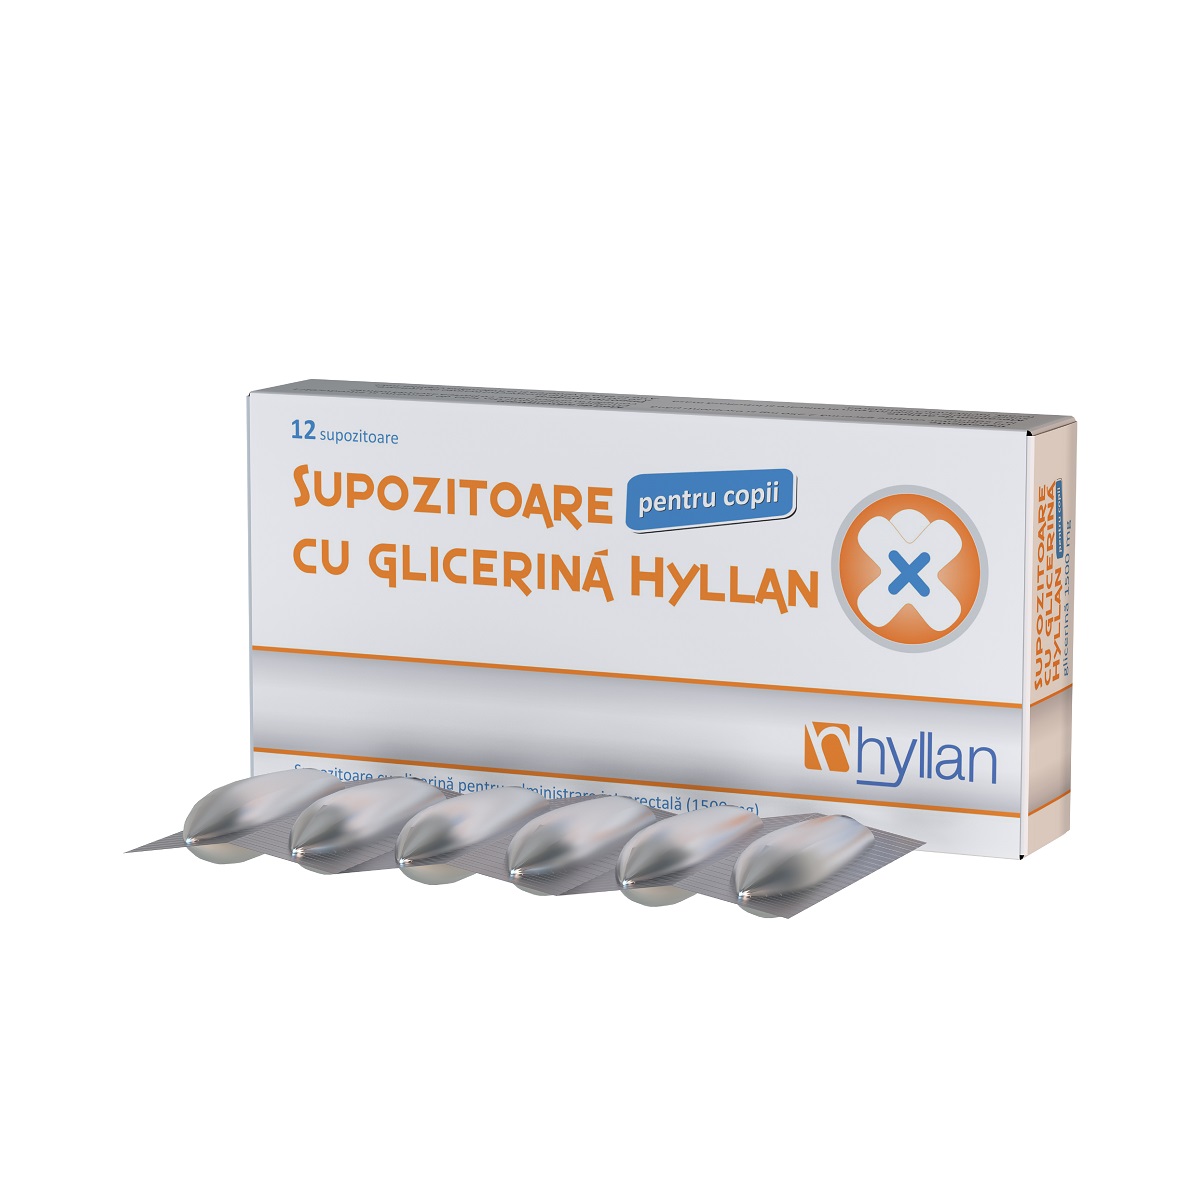 Supozitoare cu glicerina pentru copii, 1500 mg, 12 bucati, Hyllan